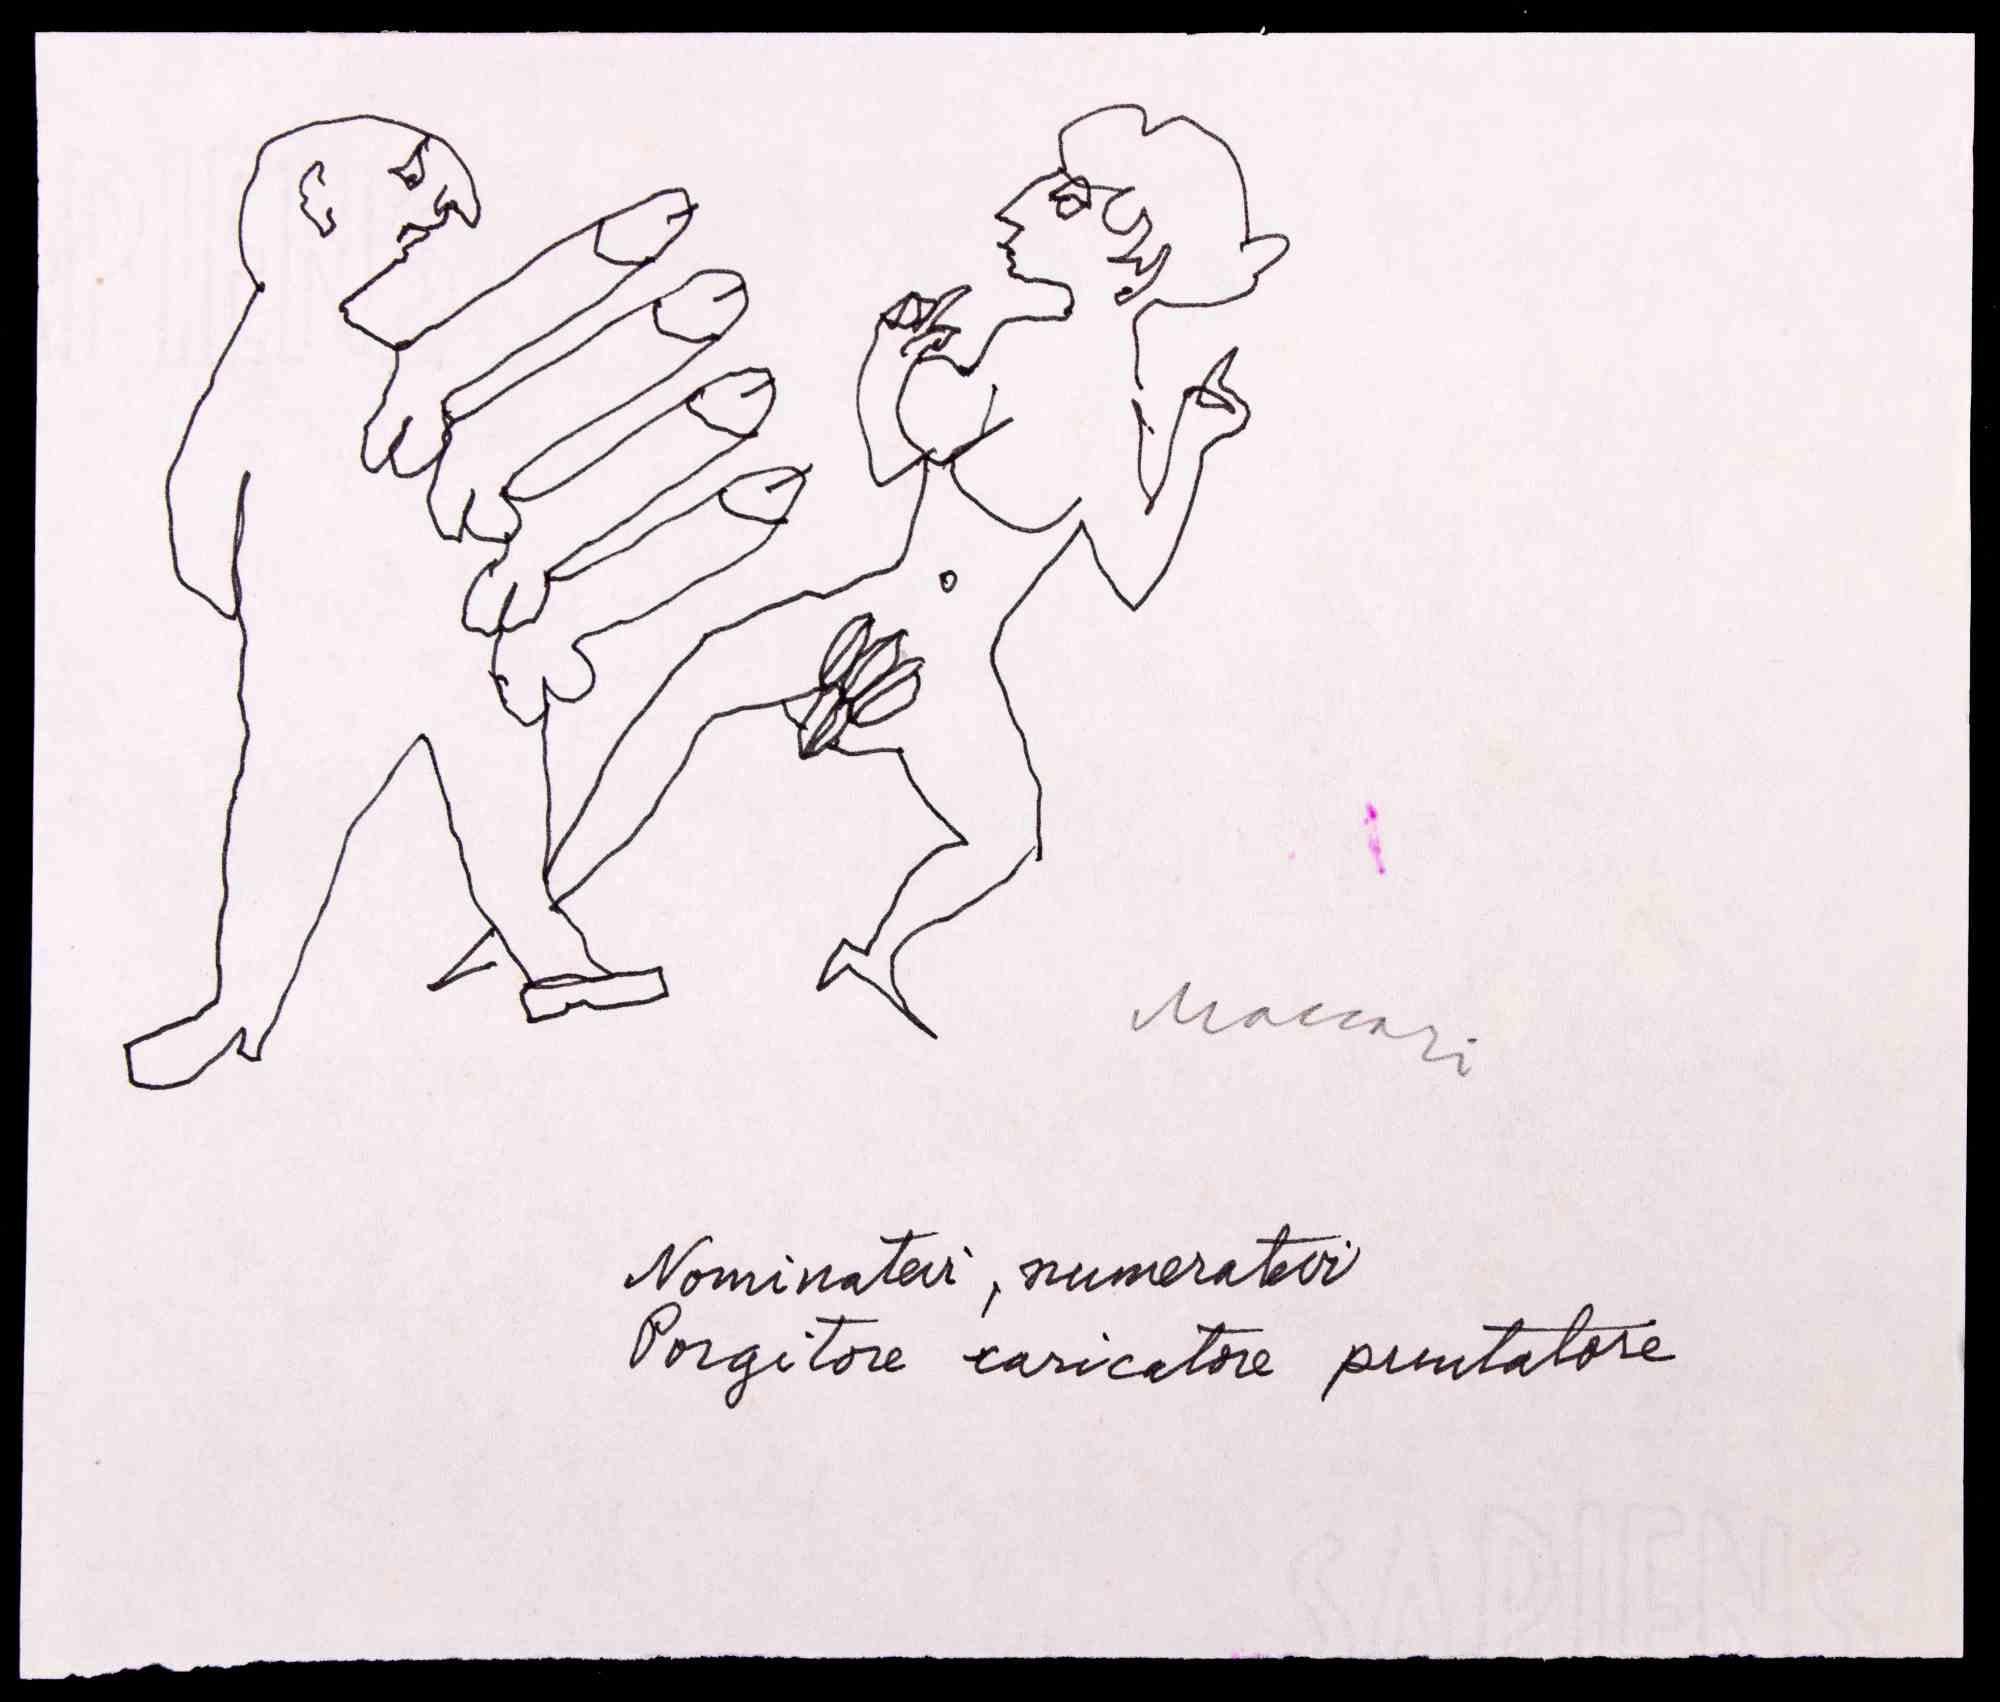 Possibility ist eine Porzellan-Tuschezeichnung von Mino Maccari aus dem Jahr 1970.

Handsigniert am unteren Rand.

Guter Zustand auf weißem Papier.

Mino Maccari (Siena, 1924-Rom, 16. Juni 1989) war ein italienischer Schriftsteller, Maler, Graveur